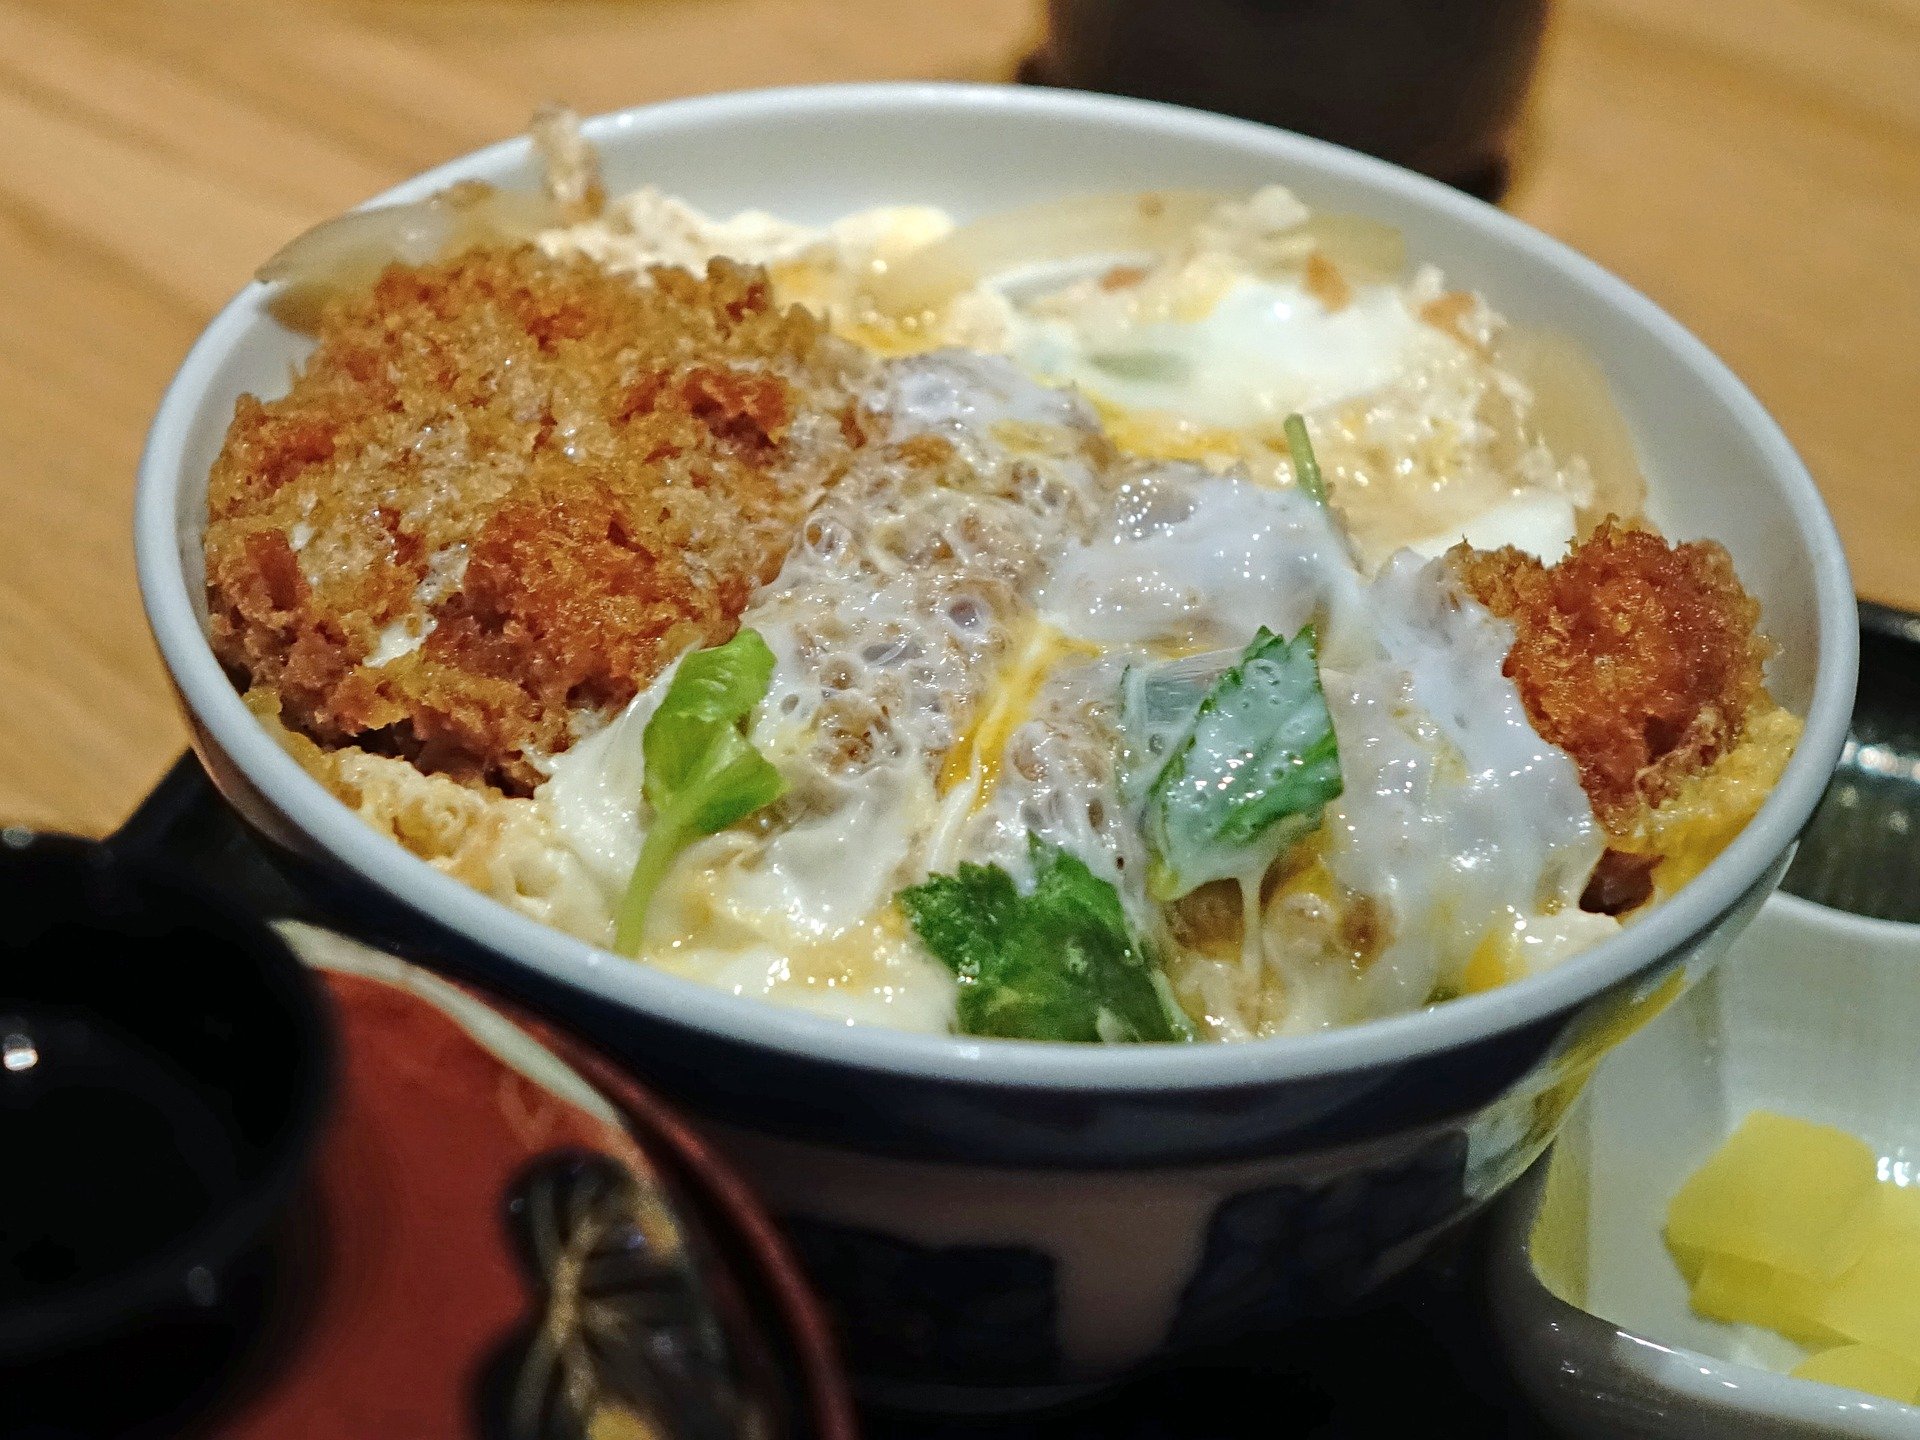 マツコの知らない世界 サンマレシピ サンマ蒲焼丼の作り方 10 13 Kan Hikaブログ